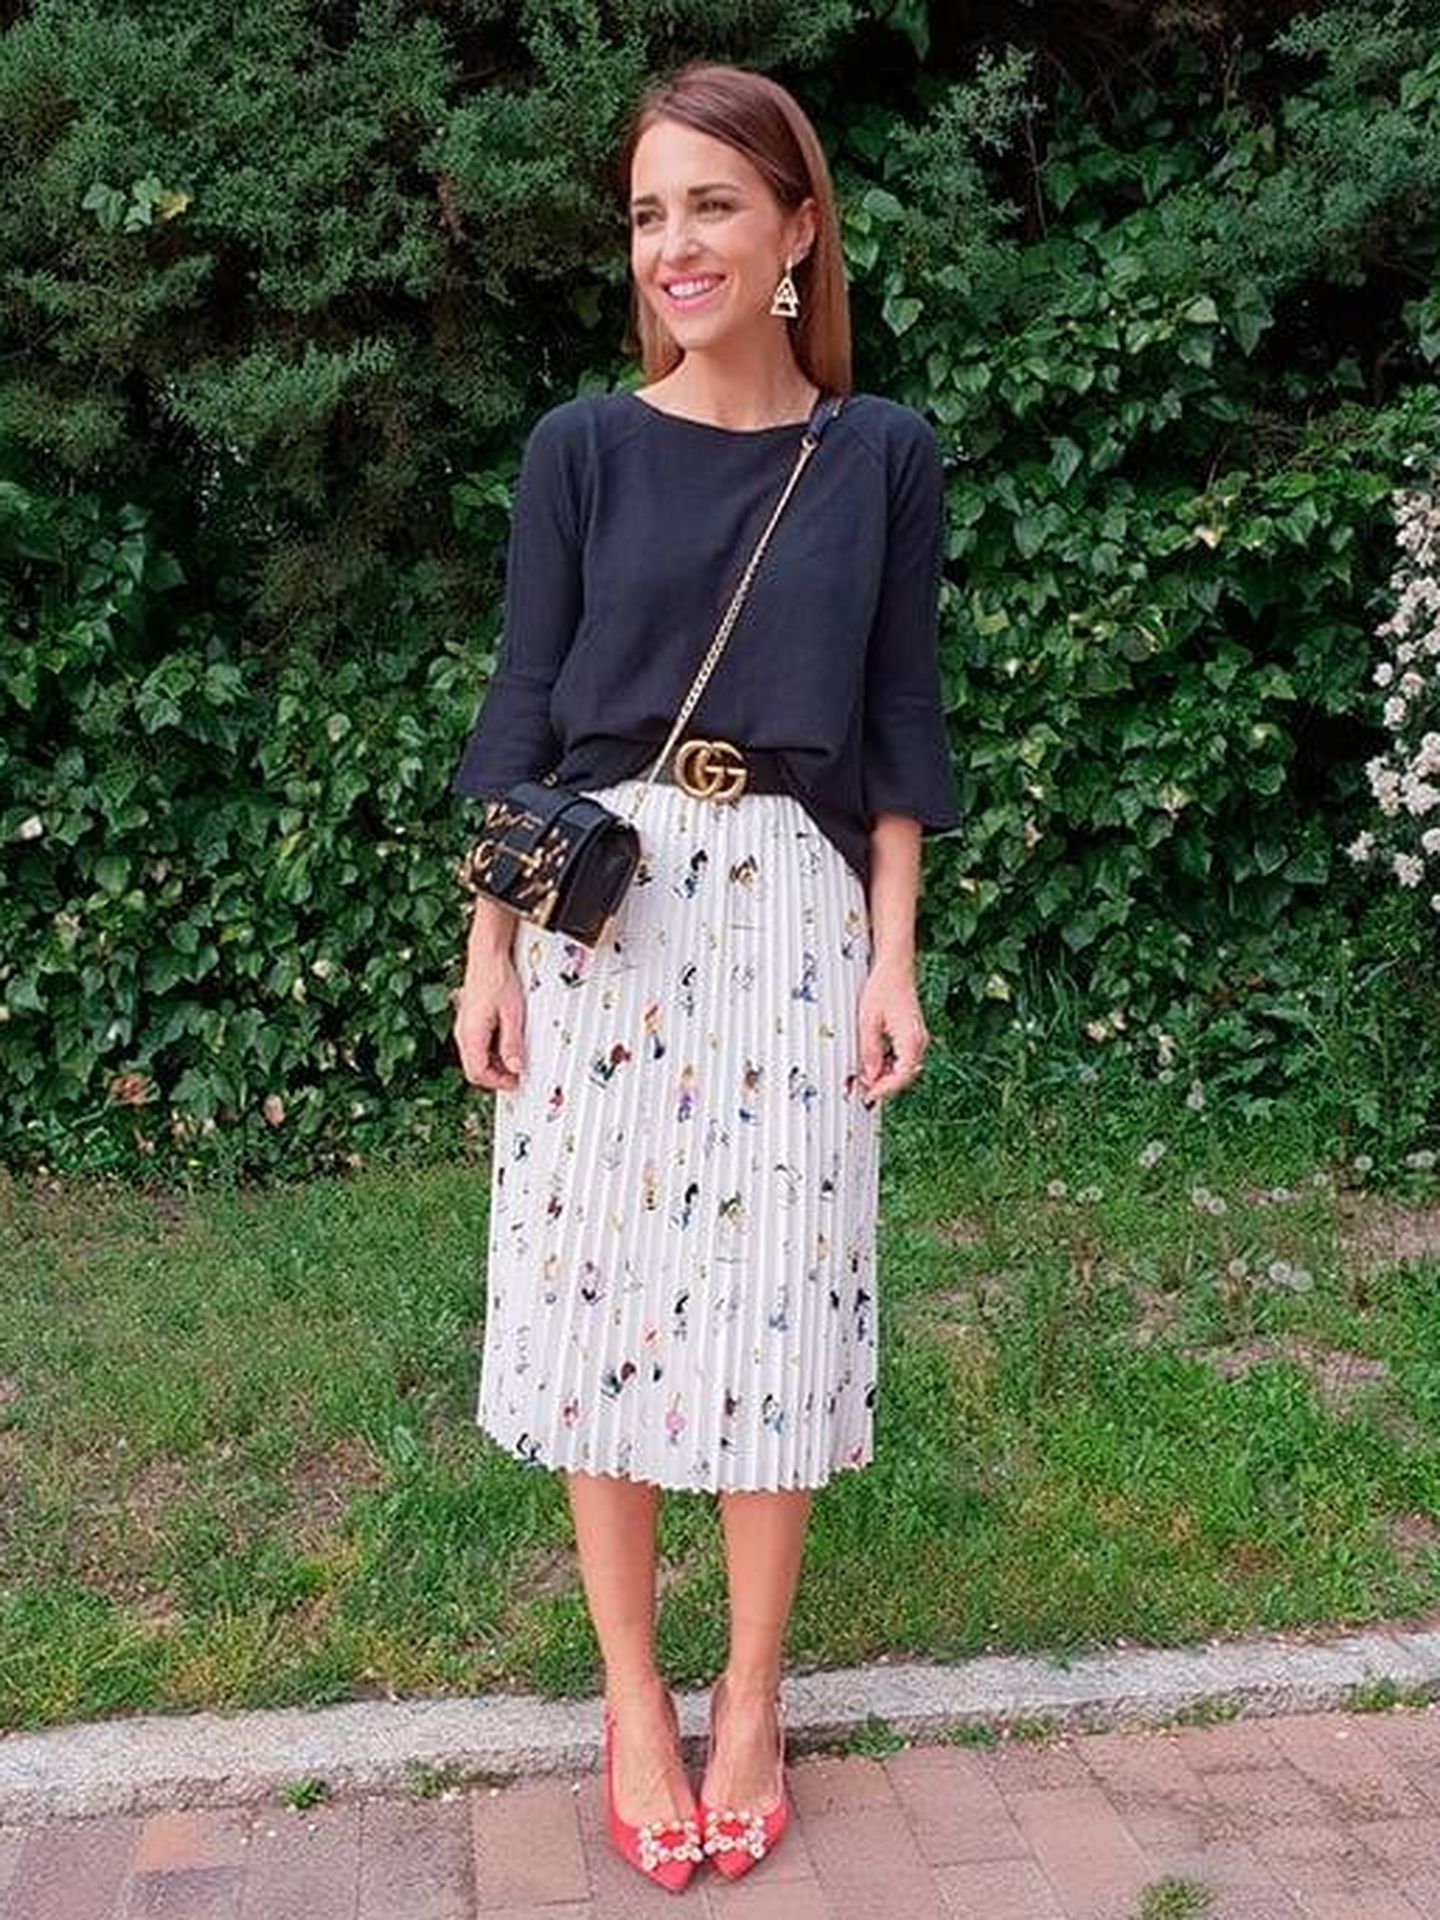 Copia su versión de la falda midi plisada y ponla en práctica para ir a trabajar.  (Instagram)